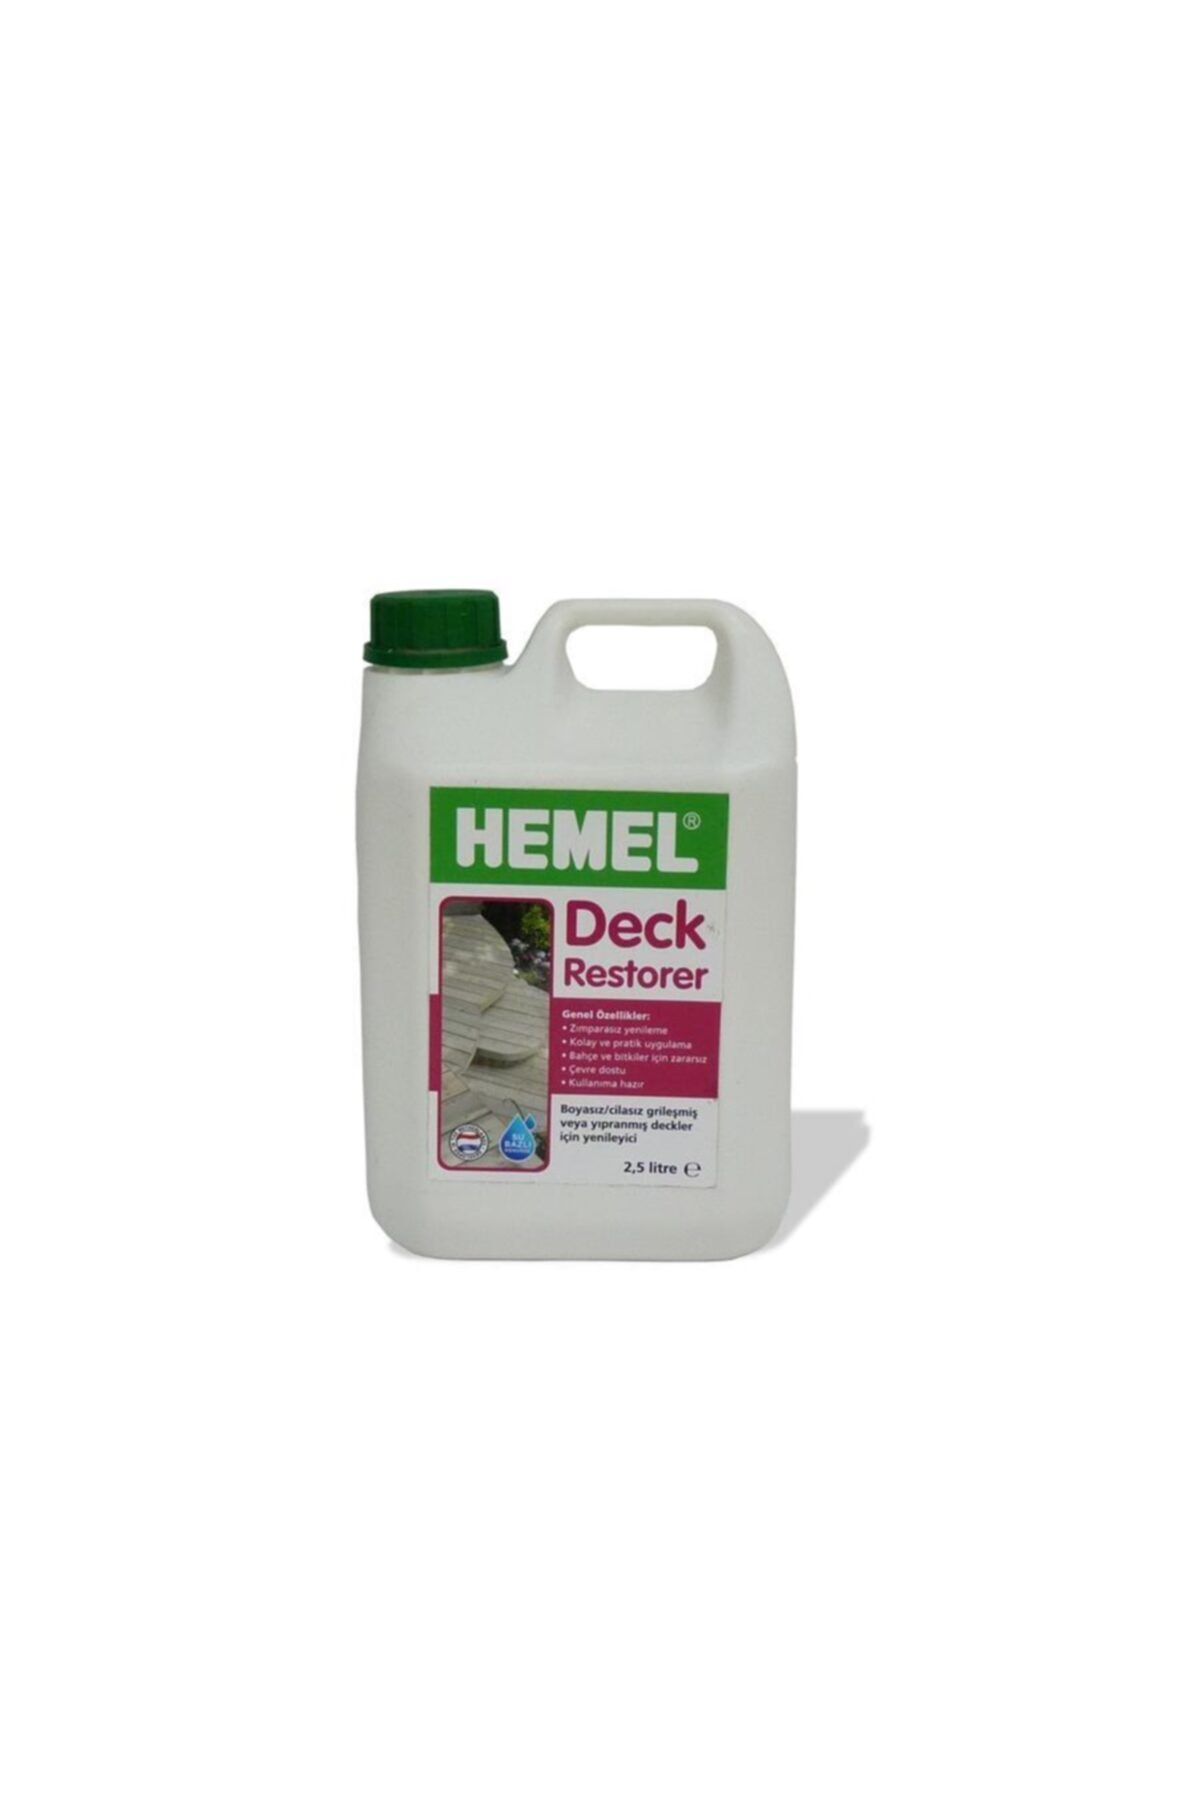 Hemel Deck Restorer - Deck Yenileyici & Temileyici 2.5lt